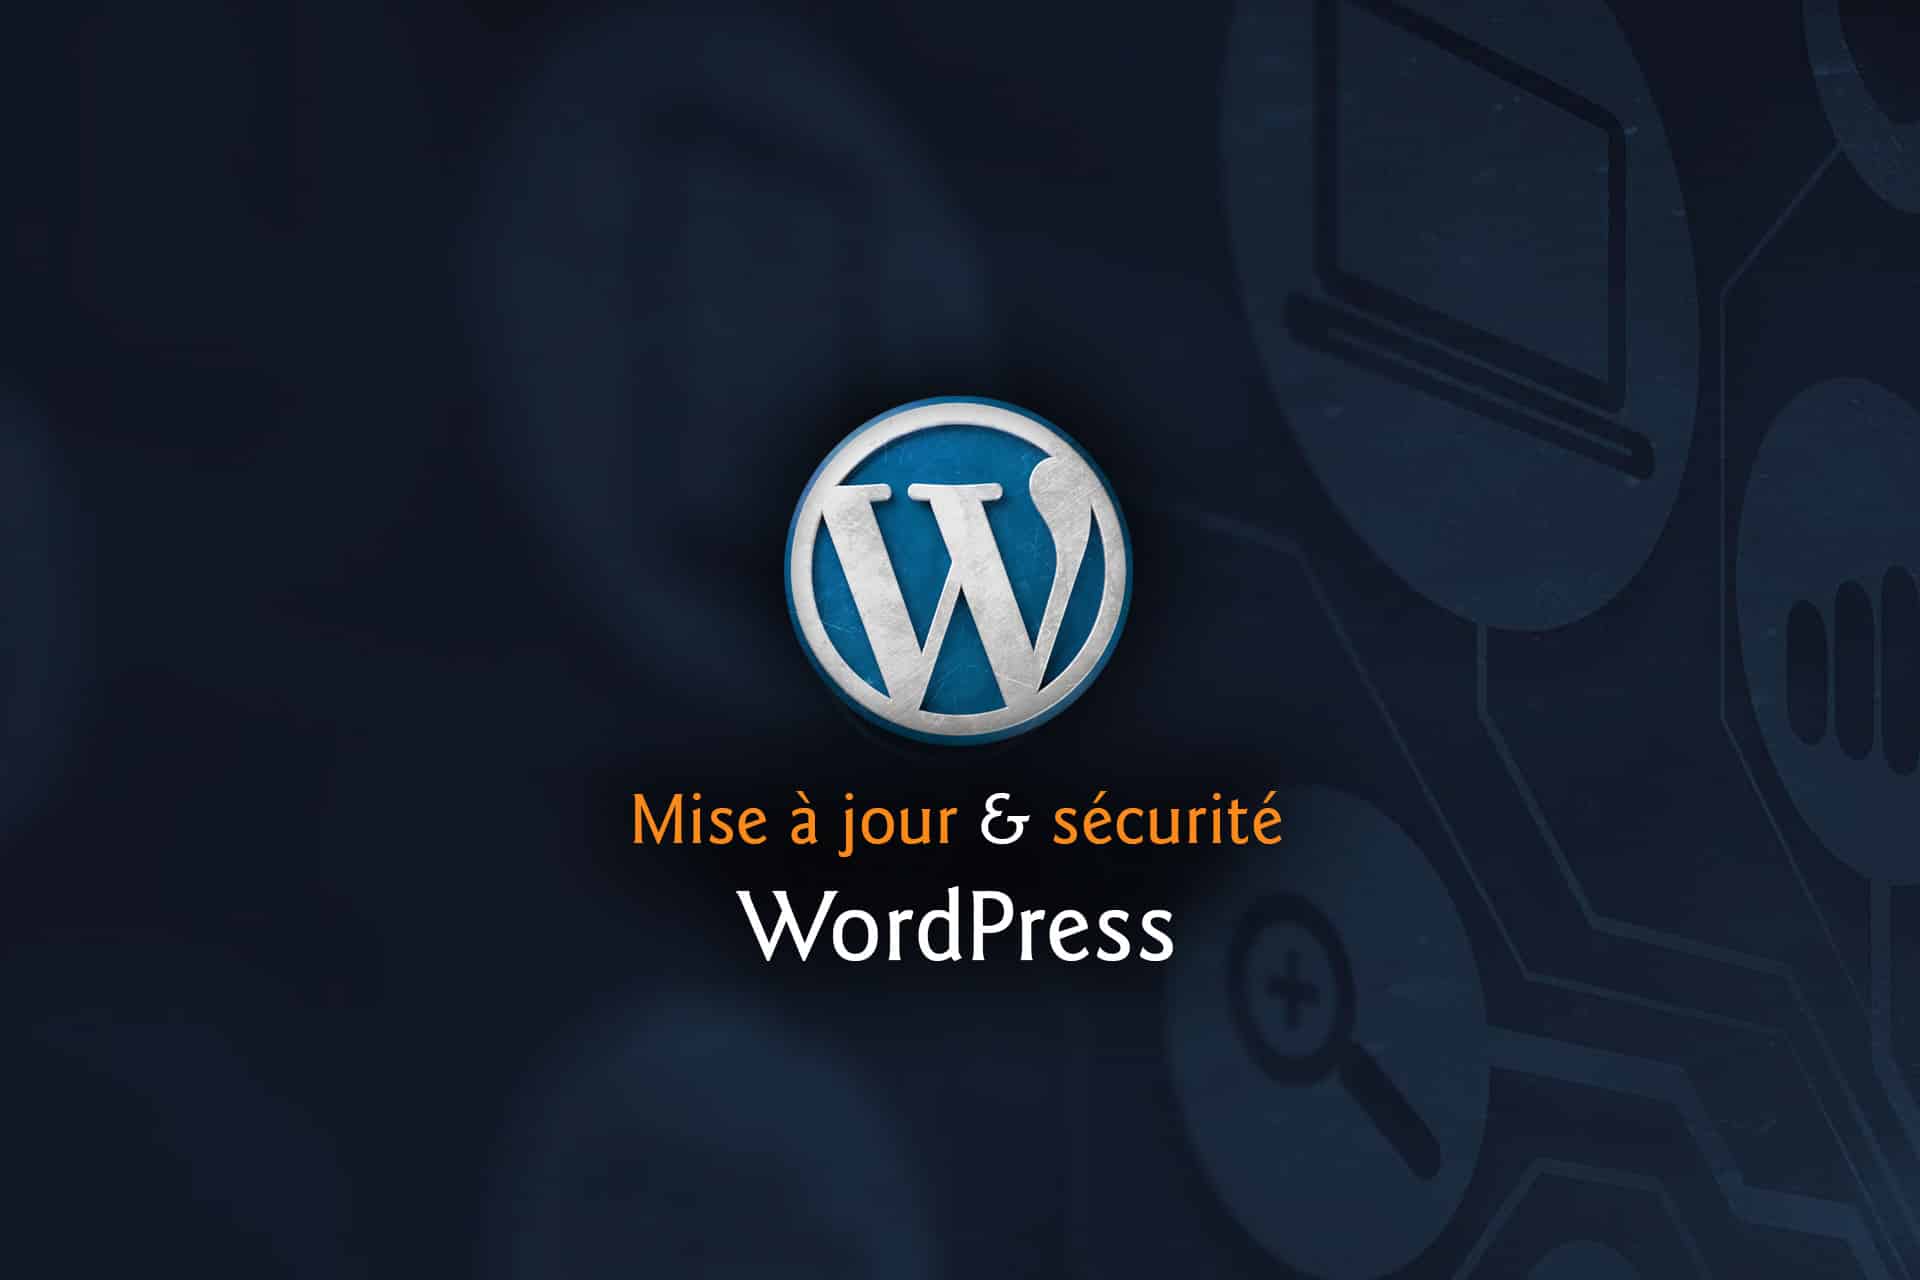 Mise à jour & sécurité Wordpress